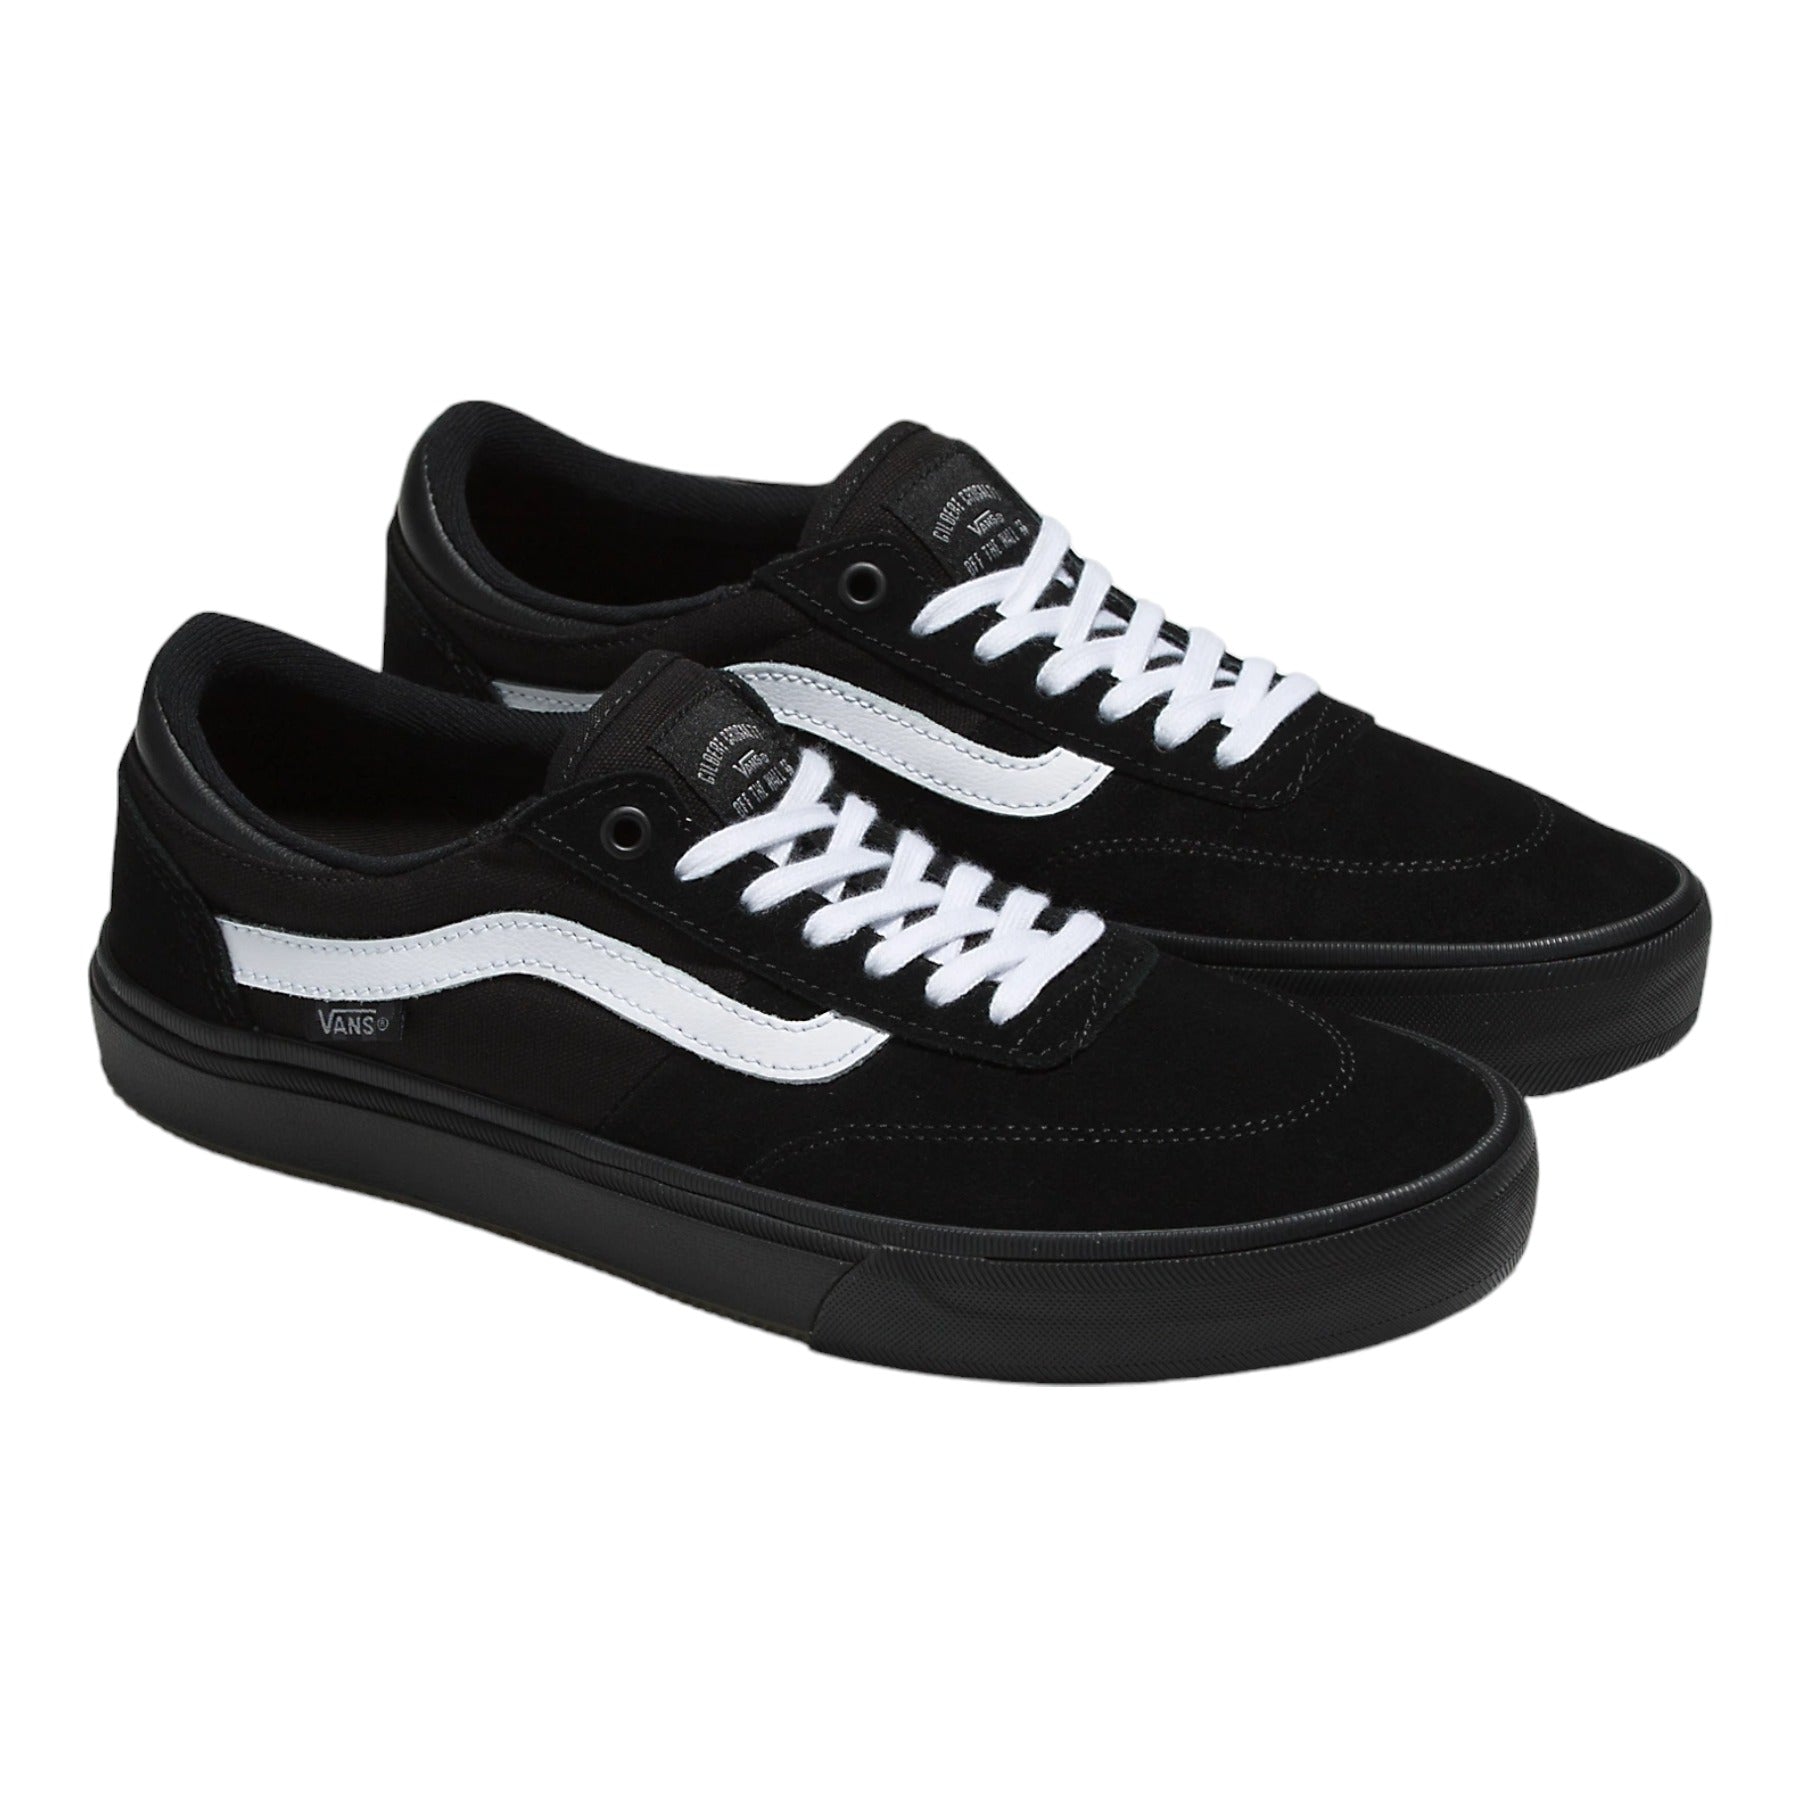 Vans Skate Gilbert Crockett Shoes - Blackout